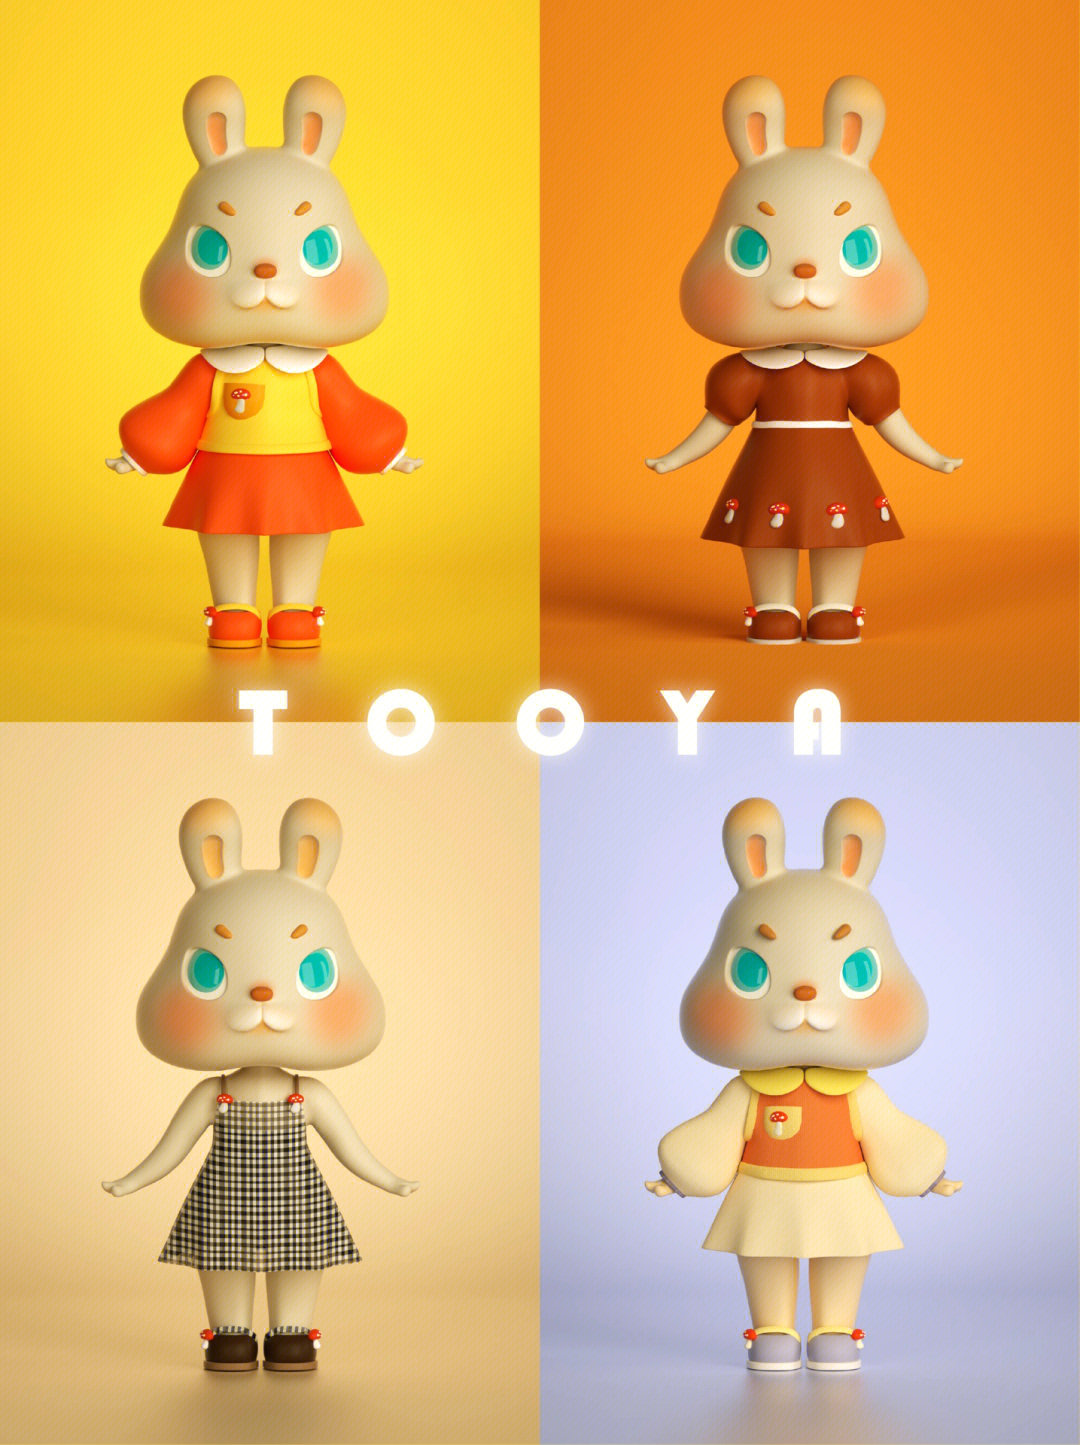 原创ip设计兔牙tooya兔子ip形象设计